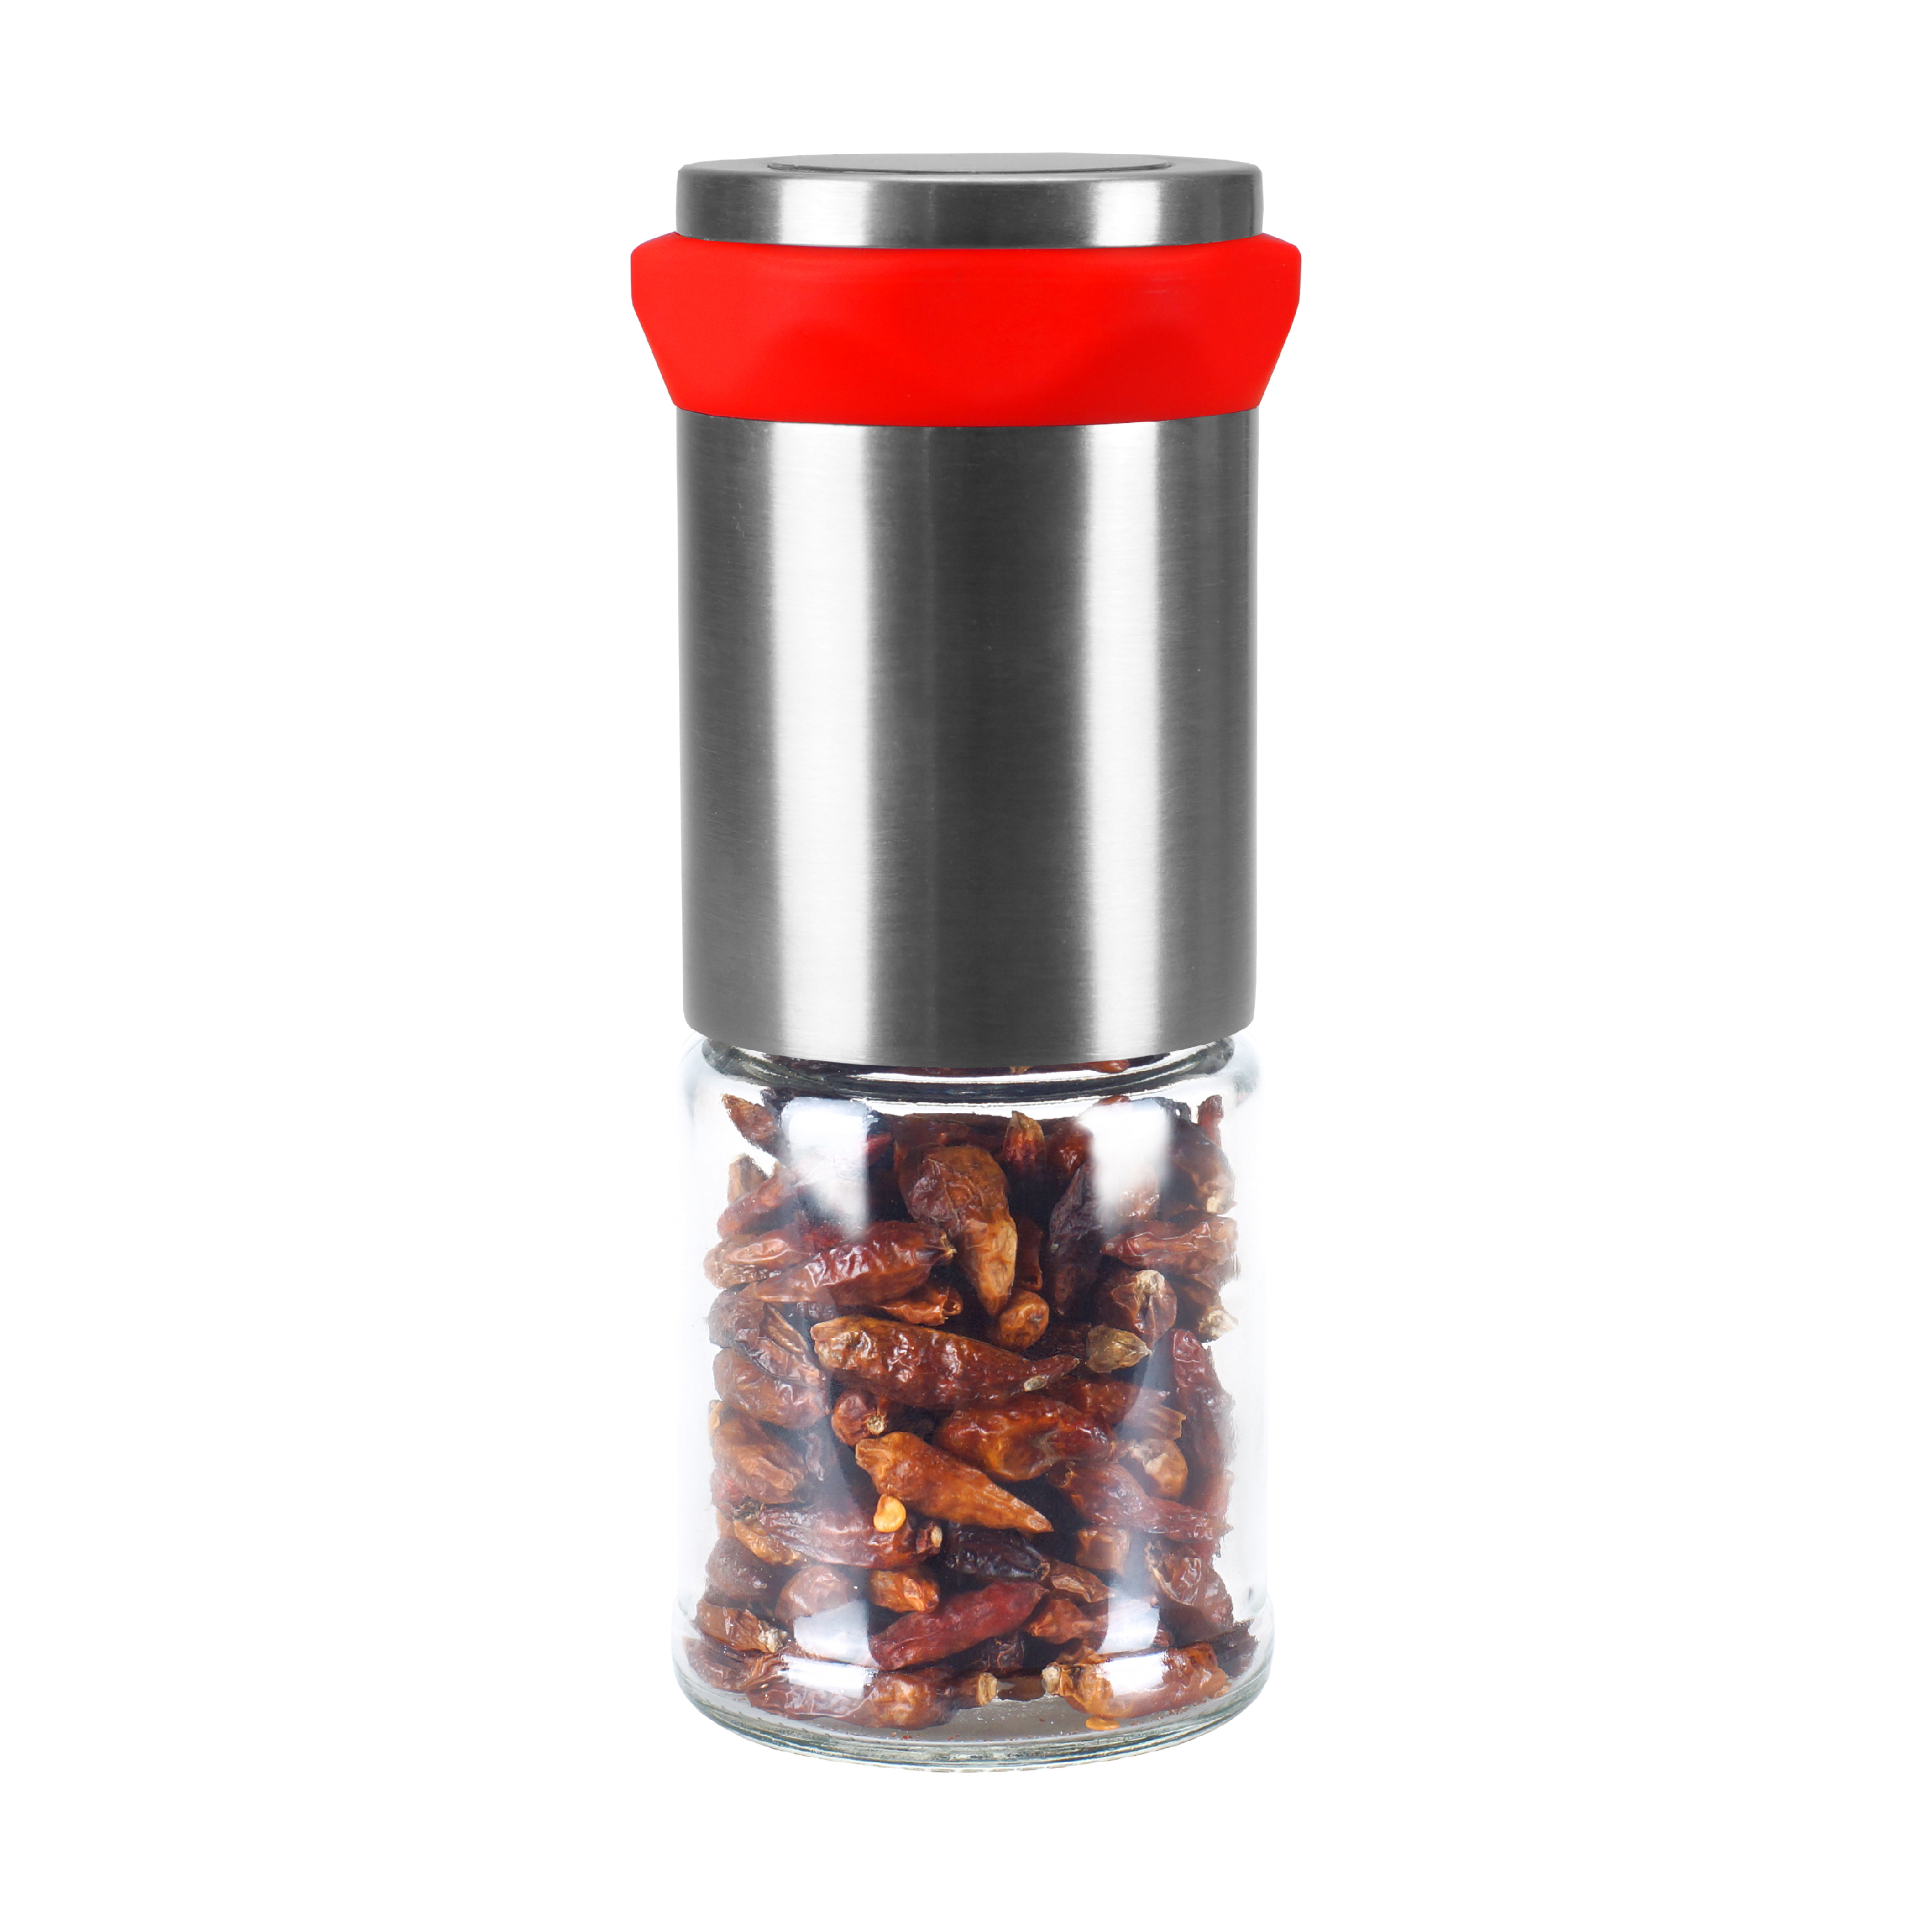 Ručný mlynček na chilli papričky z nehrdzavejúcej ocele so sklenenou nádobou